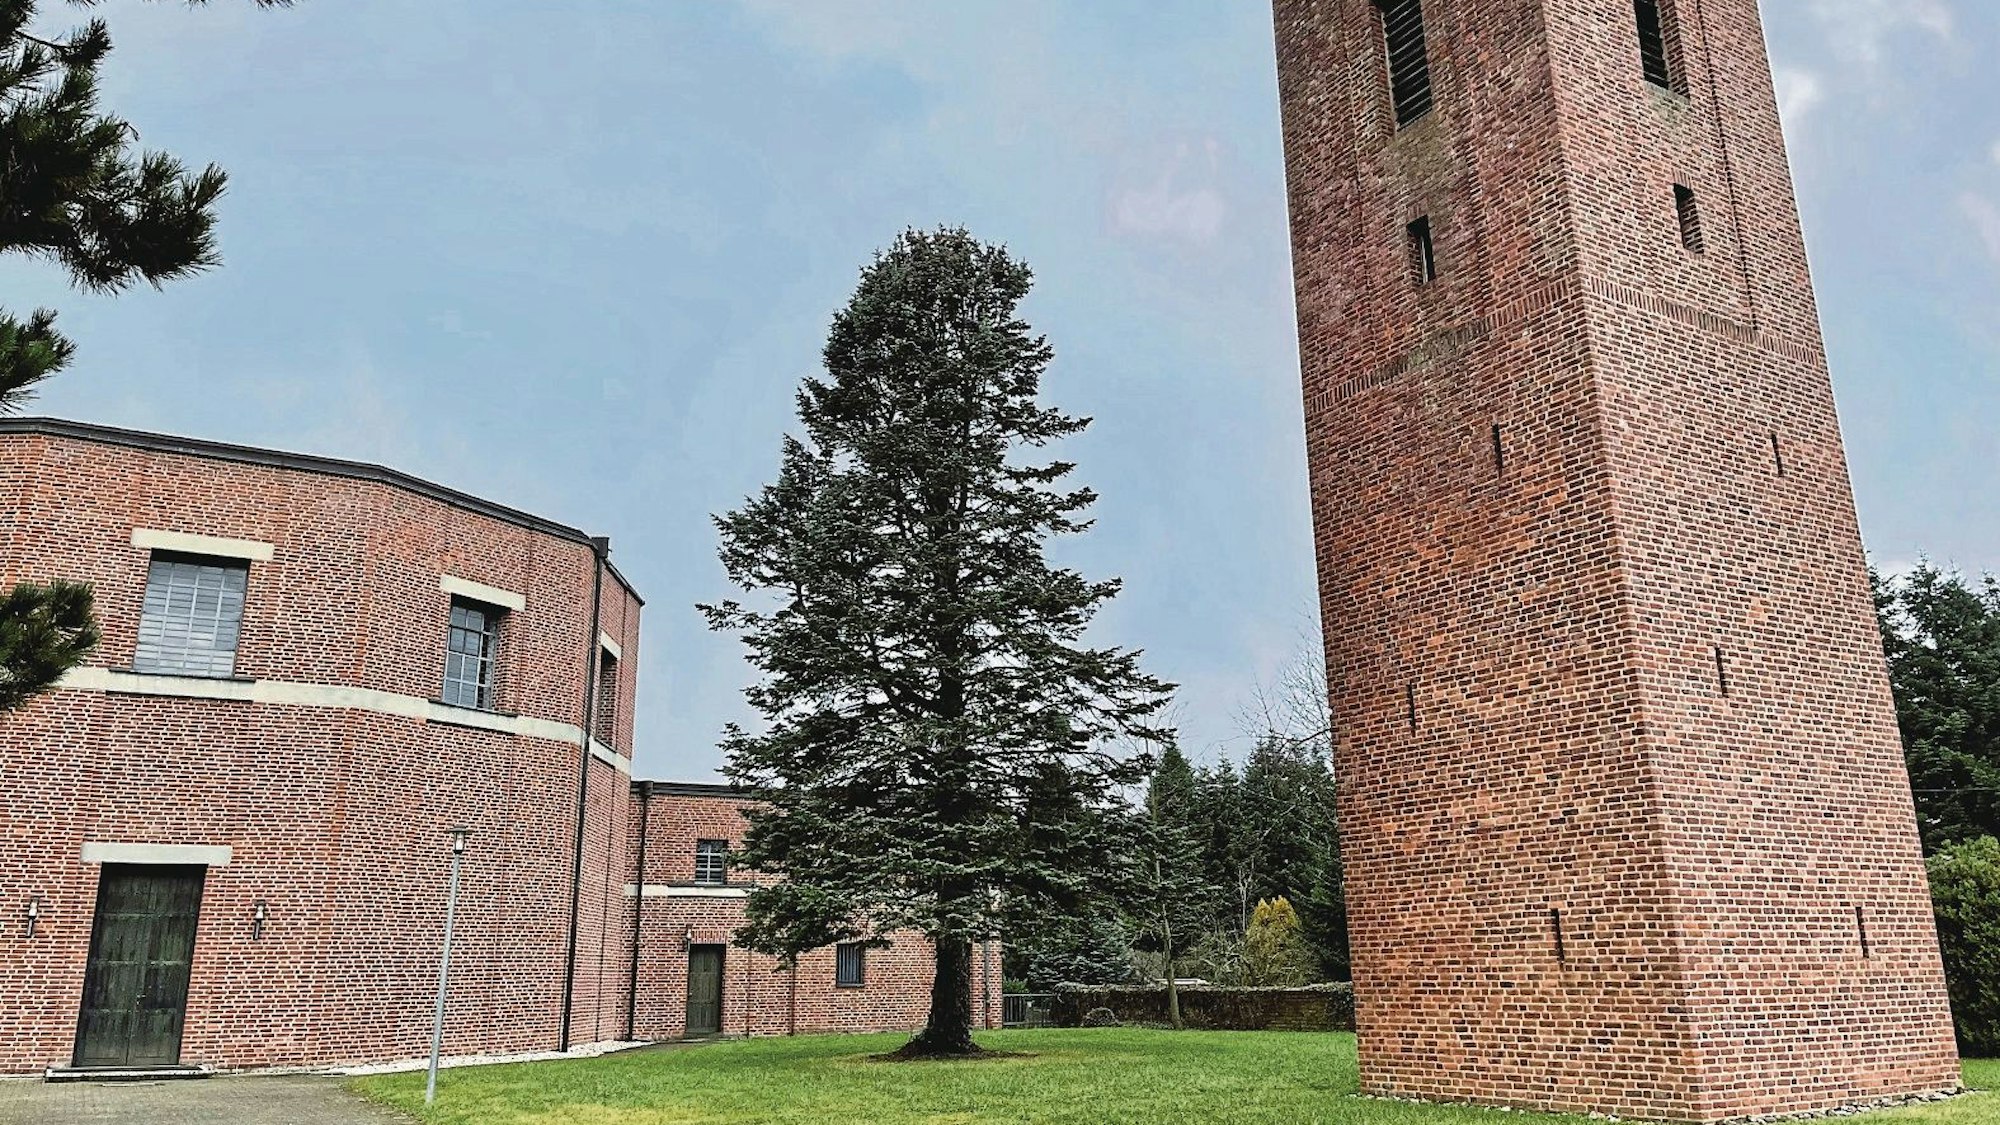 Rechts steht ein hoher, viereckiger Backsteinturm, links ein Rundbau ebenfalls aus Backsteinen. Das Gebäudeensemble liegt in einem kleinen Park, in dem ein hoher Nadelbaum steht.